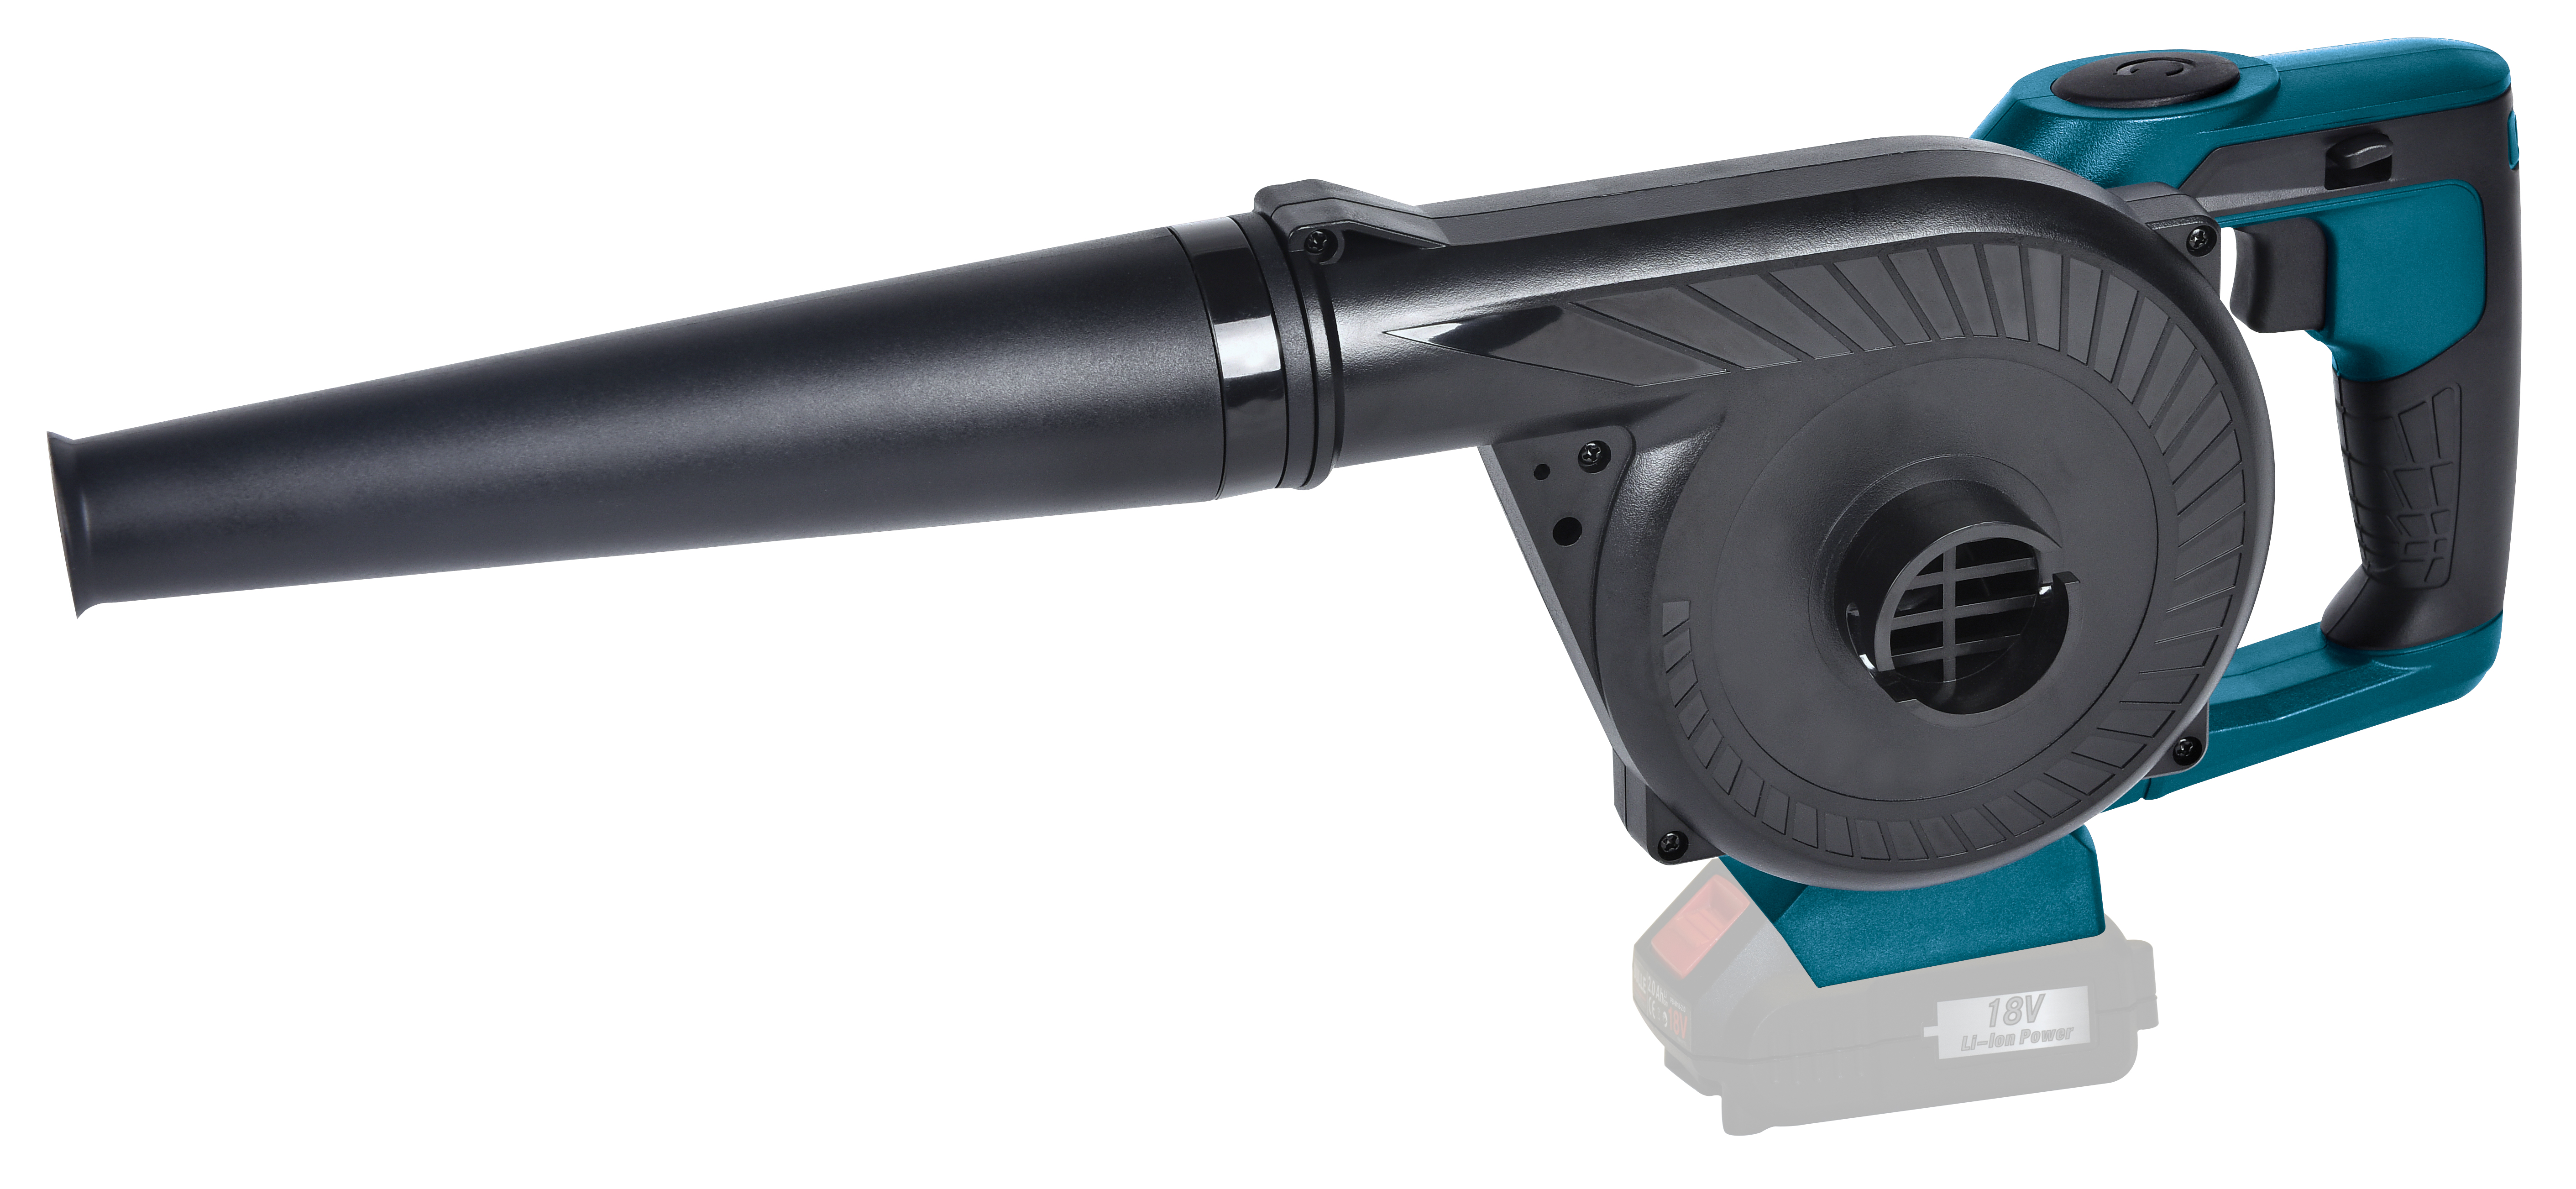 Cordless Blower Vacuum 18V Bulle